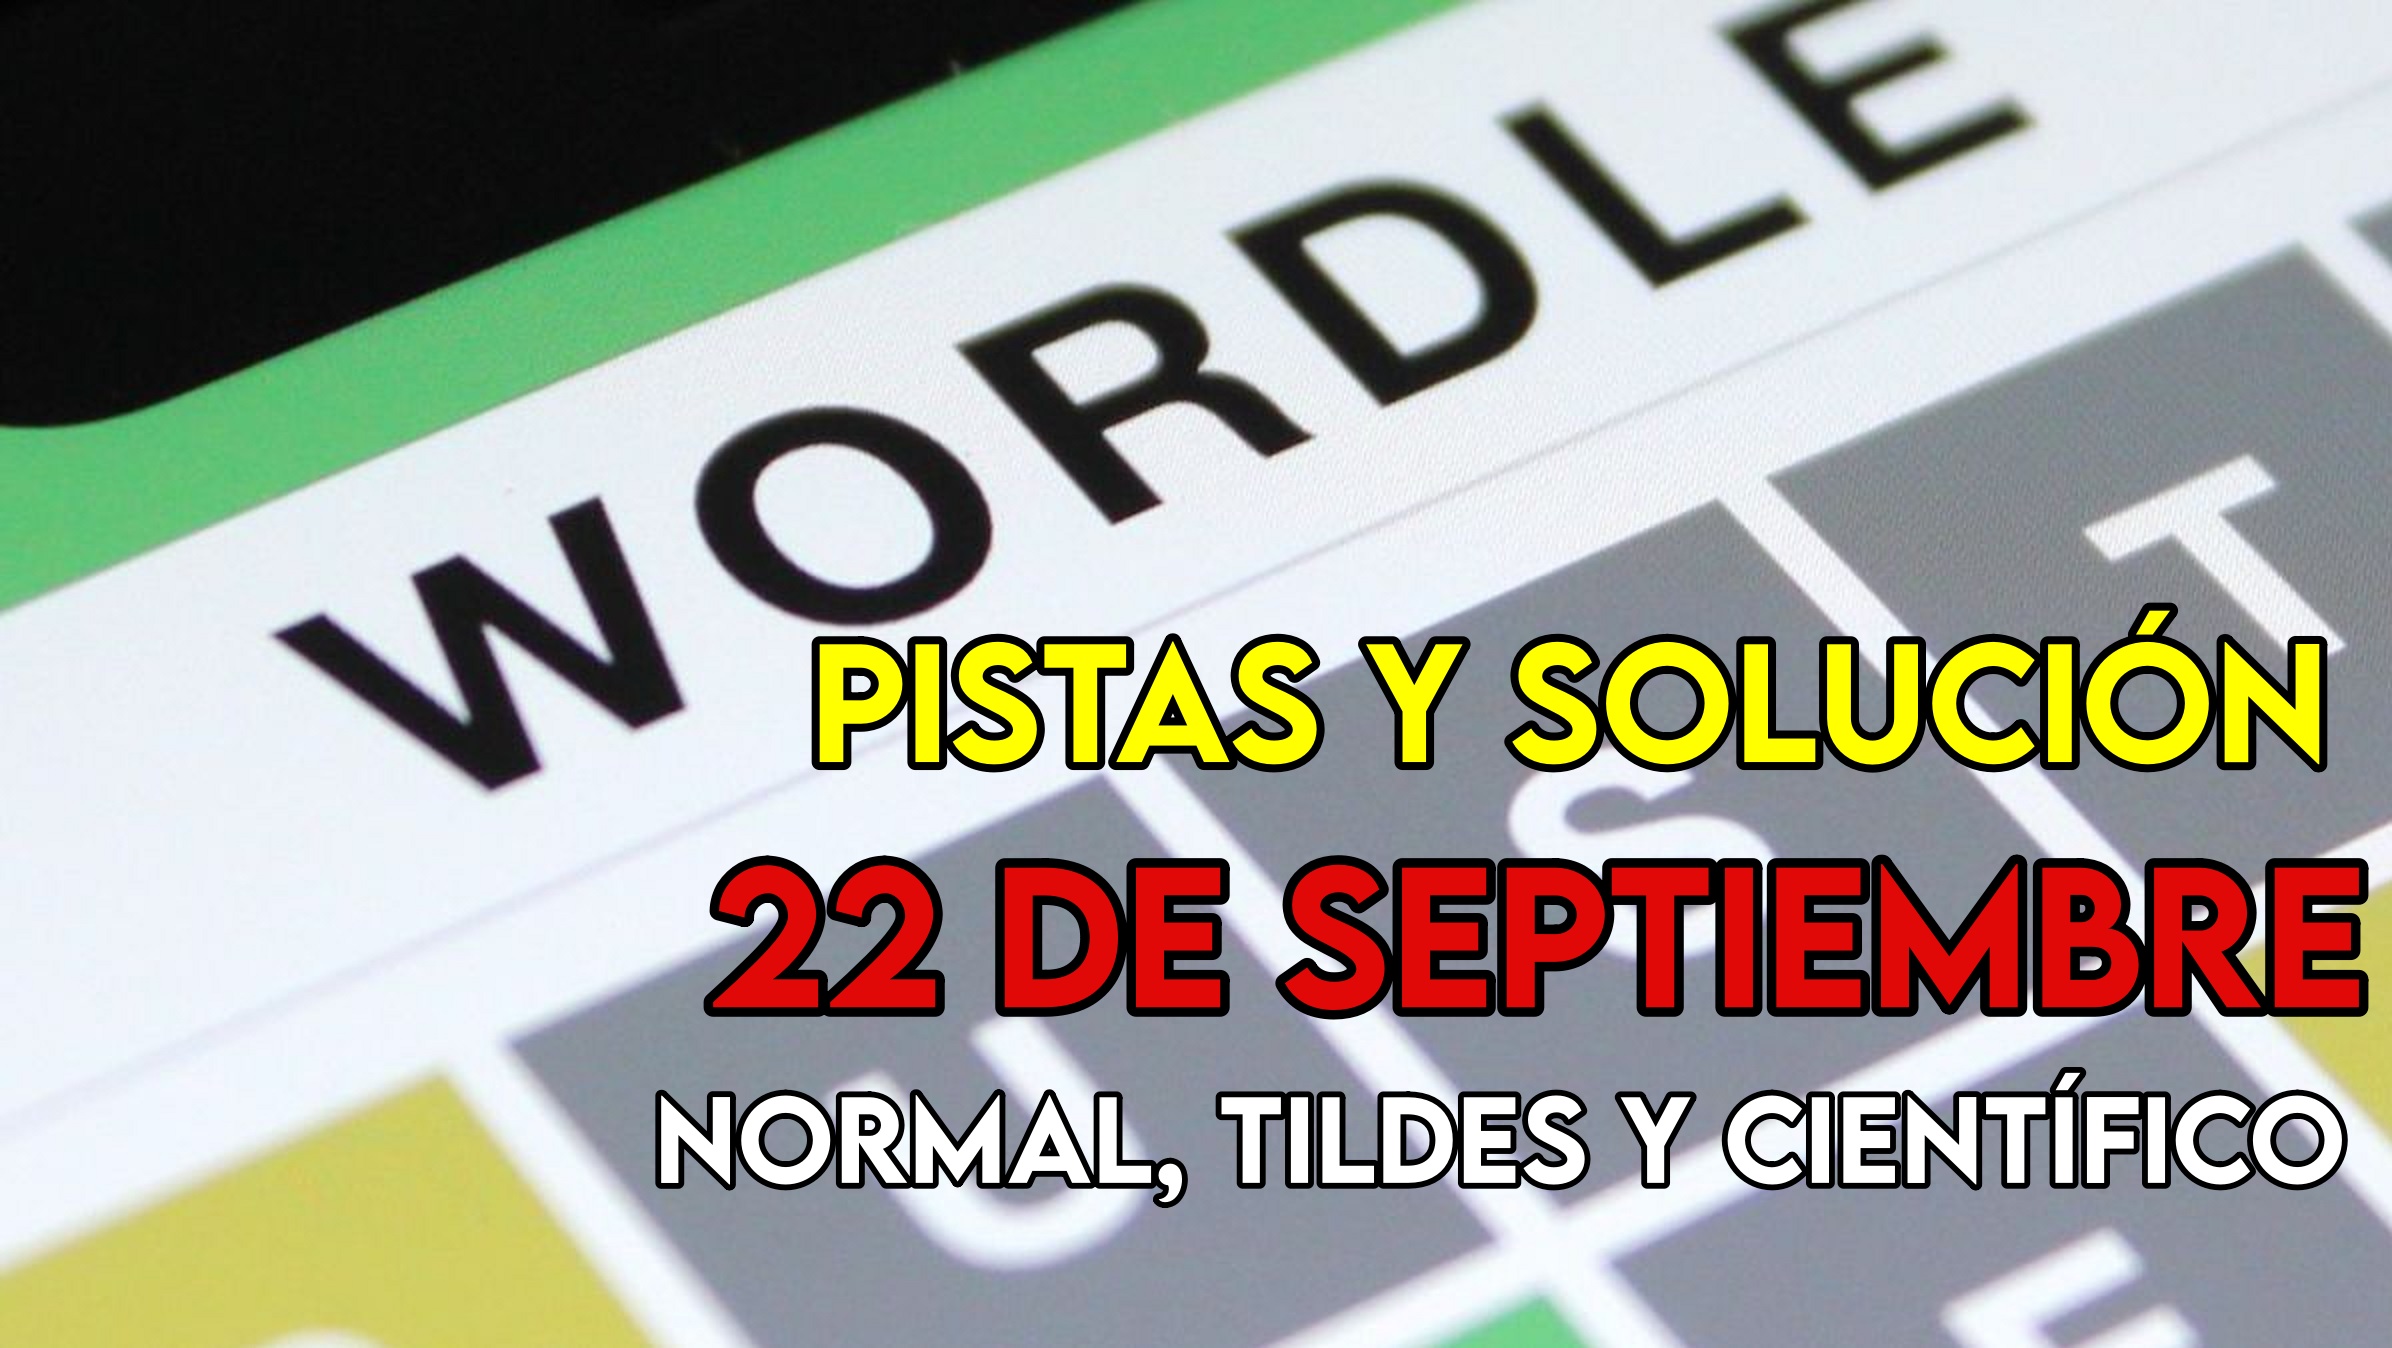 Wordle en español, científico y tildes para el reto de hoy 22 de septiembre: pistas y solución